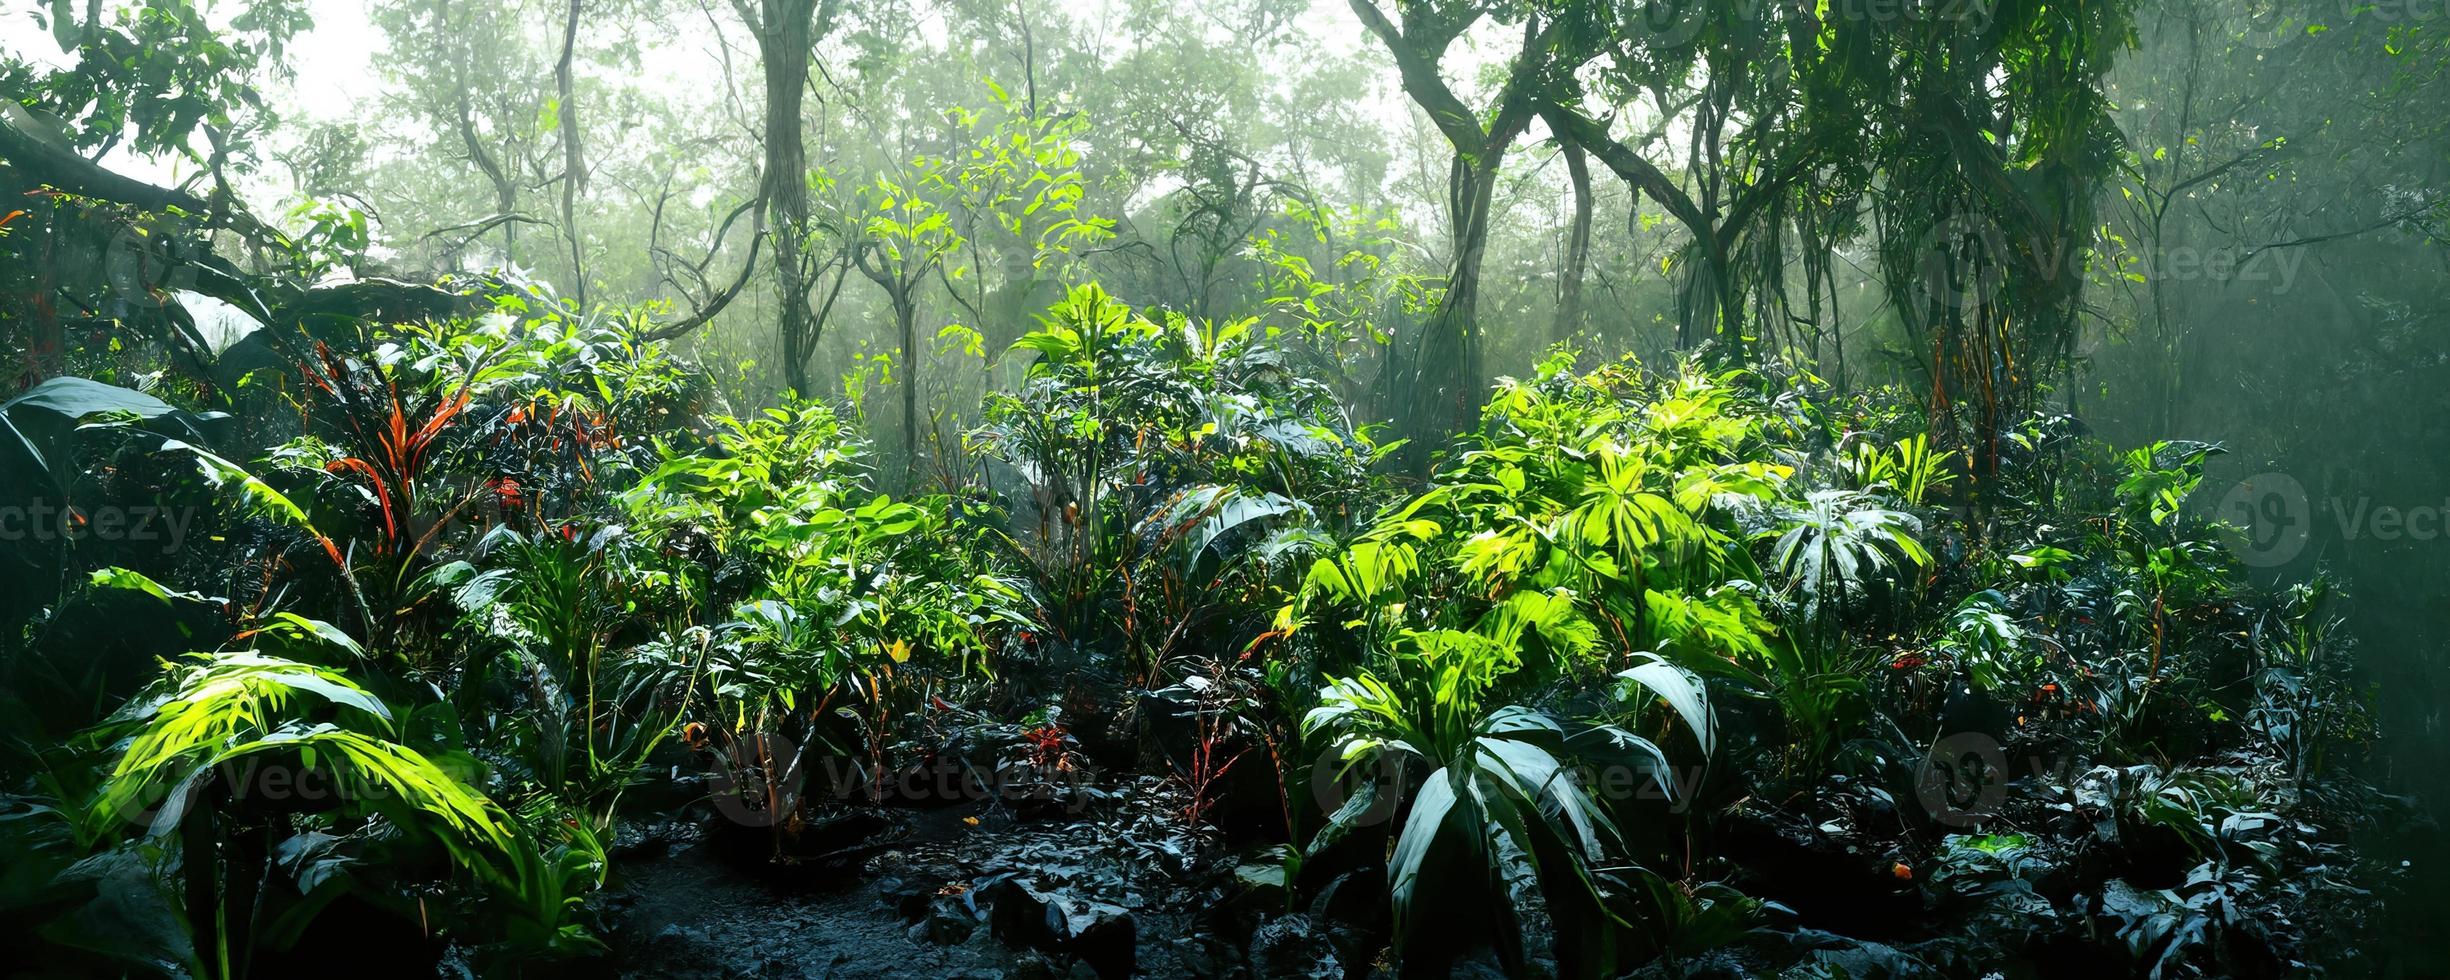 brumeux foncé exotique tropical jungle illustration conception photo